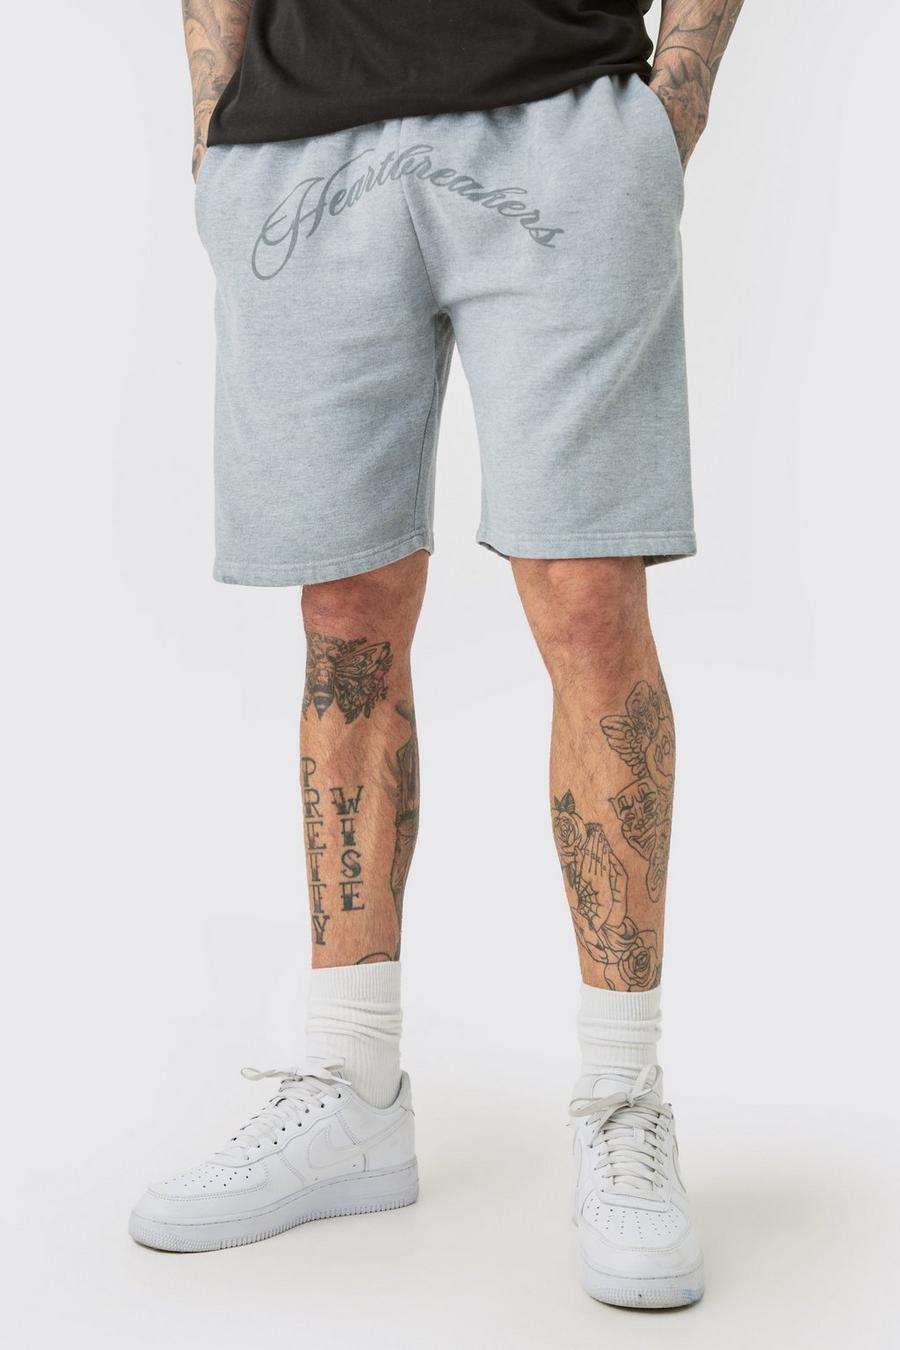 Pantalones cortos Tall oversize grises con estampado de Hearbreakers, Grey image number 1